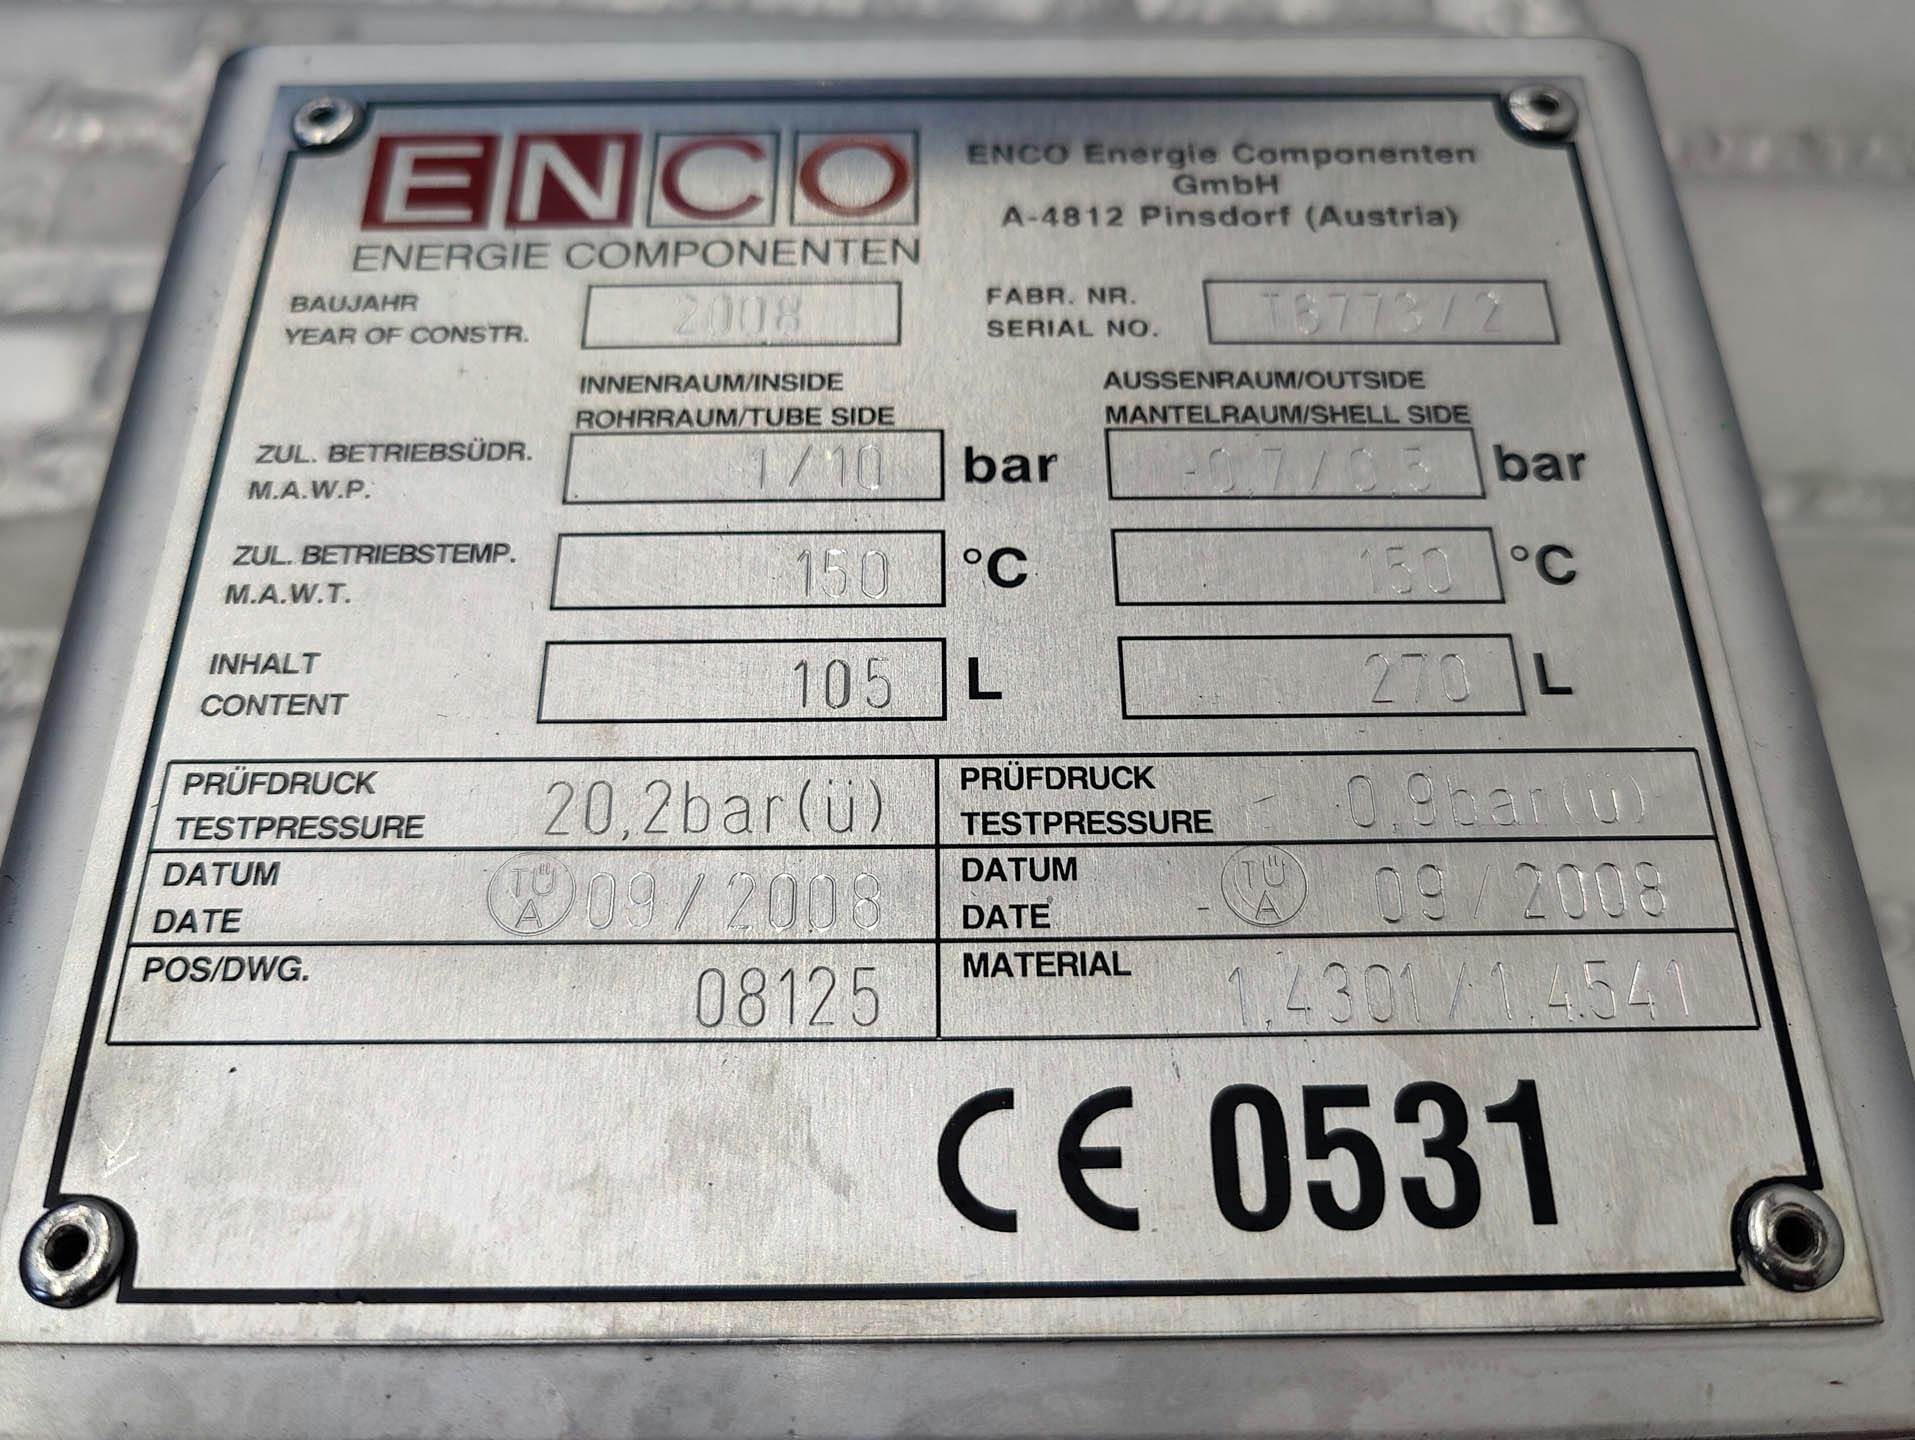 Enco finned tube heat exchanger - recuperator - Mantel- en buiswarmtewisselaar - image 6